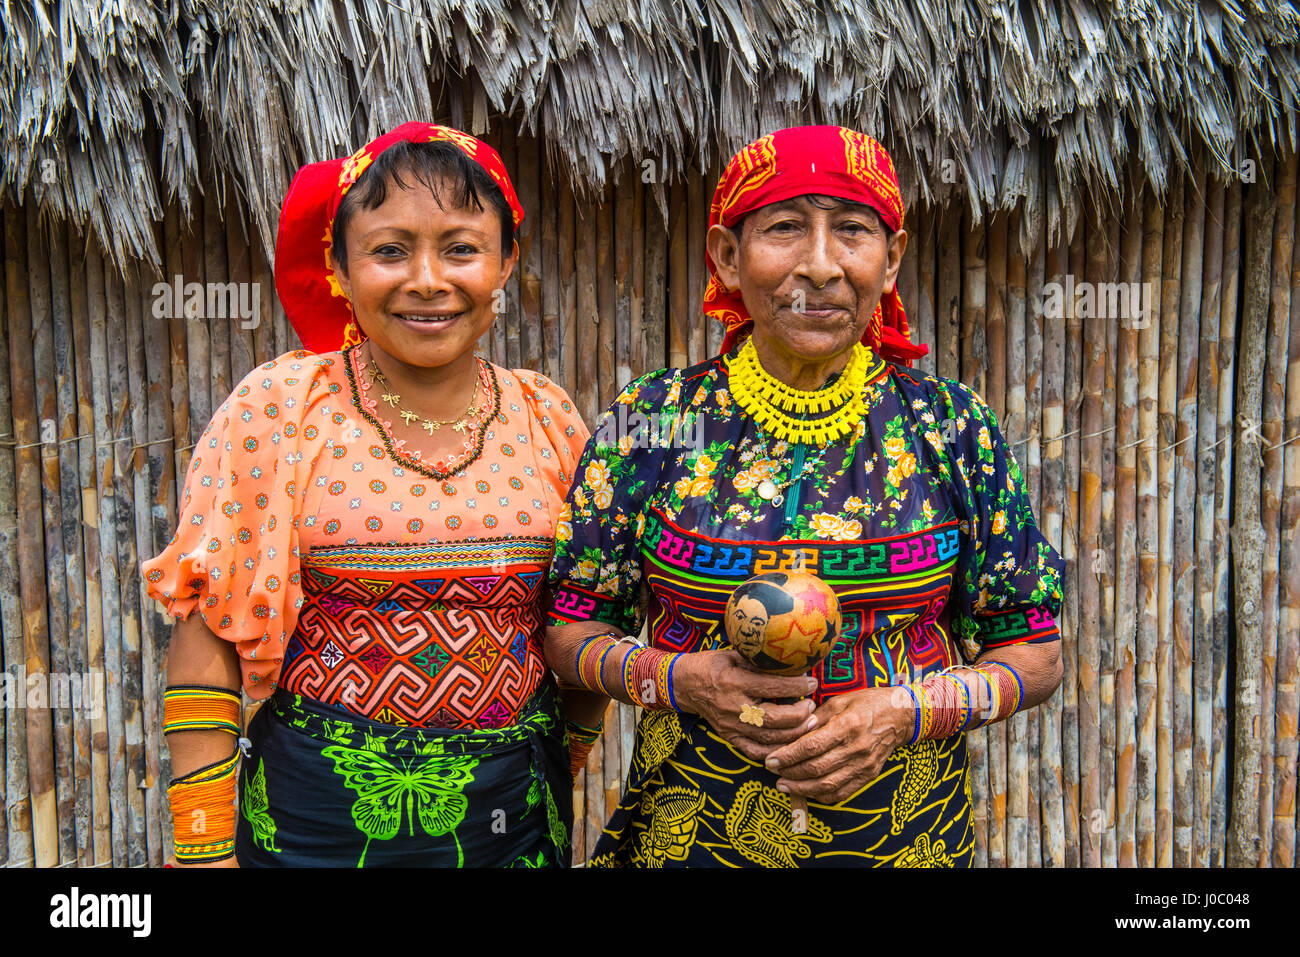 Portrait of two Kuna Yala women, Achutupu, San Blas Islands, Kuna Yala, Panama, Central America Stock Photo